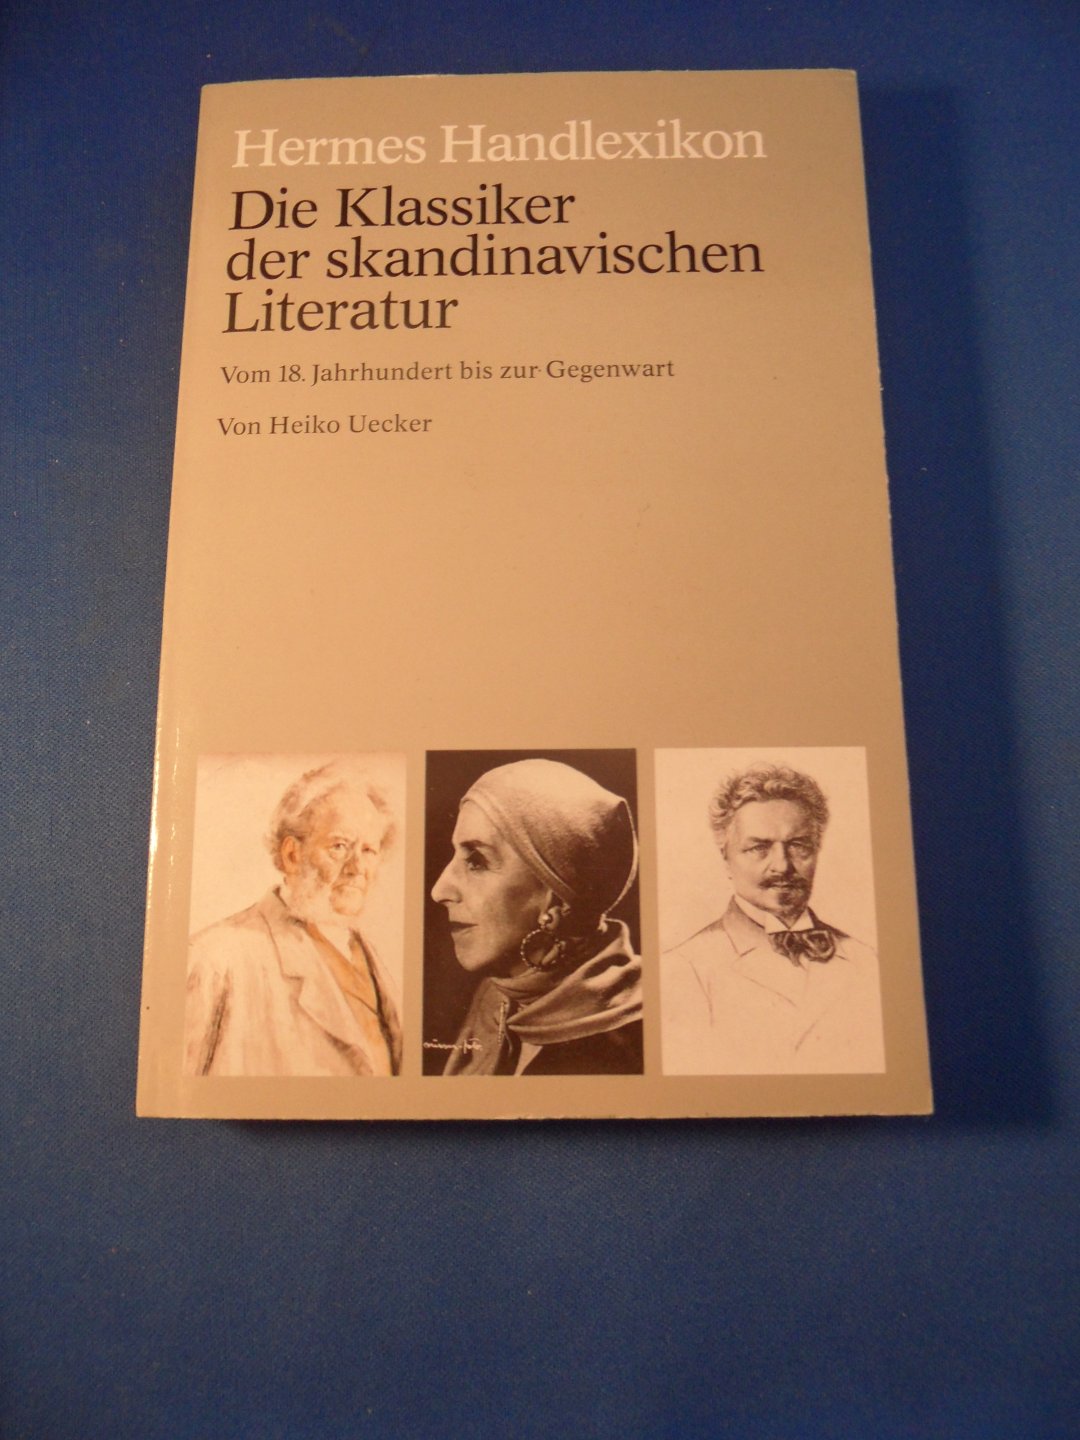 Uecker, Heiko - Hermes Handlexikon. Die Klassiker der skandinavischen Literatur, vom 18. Jahrhundert bis zur Gegenwart